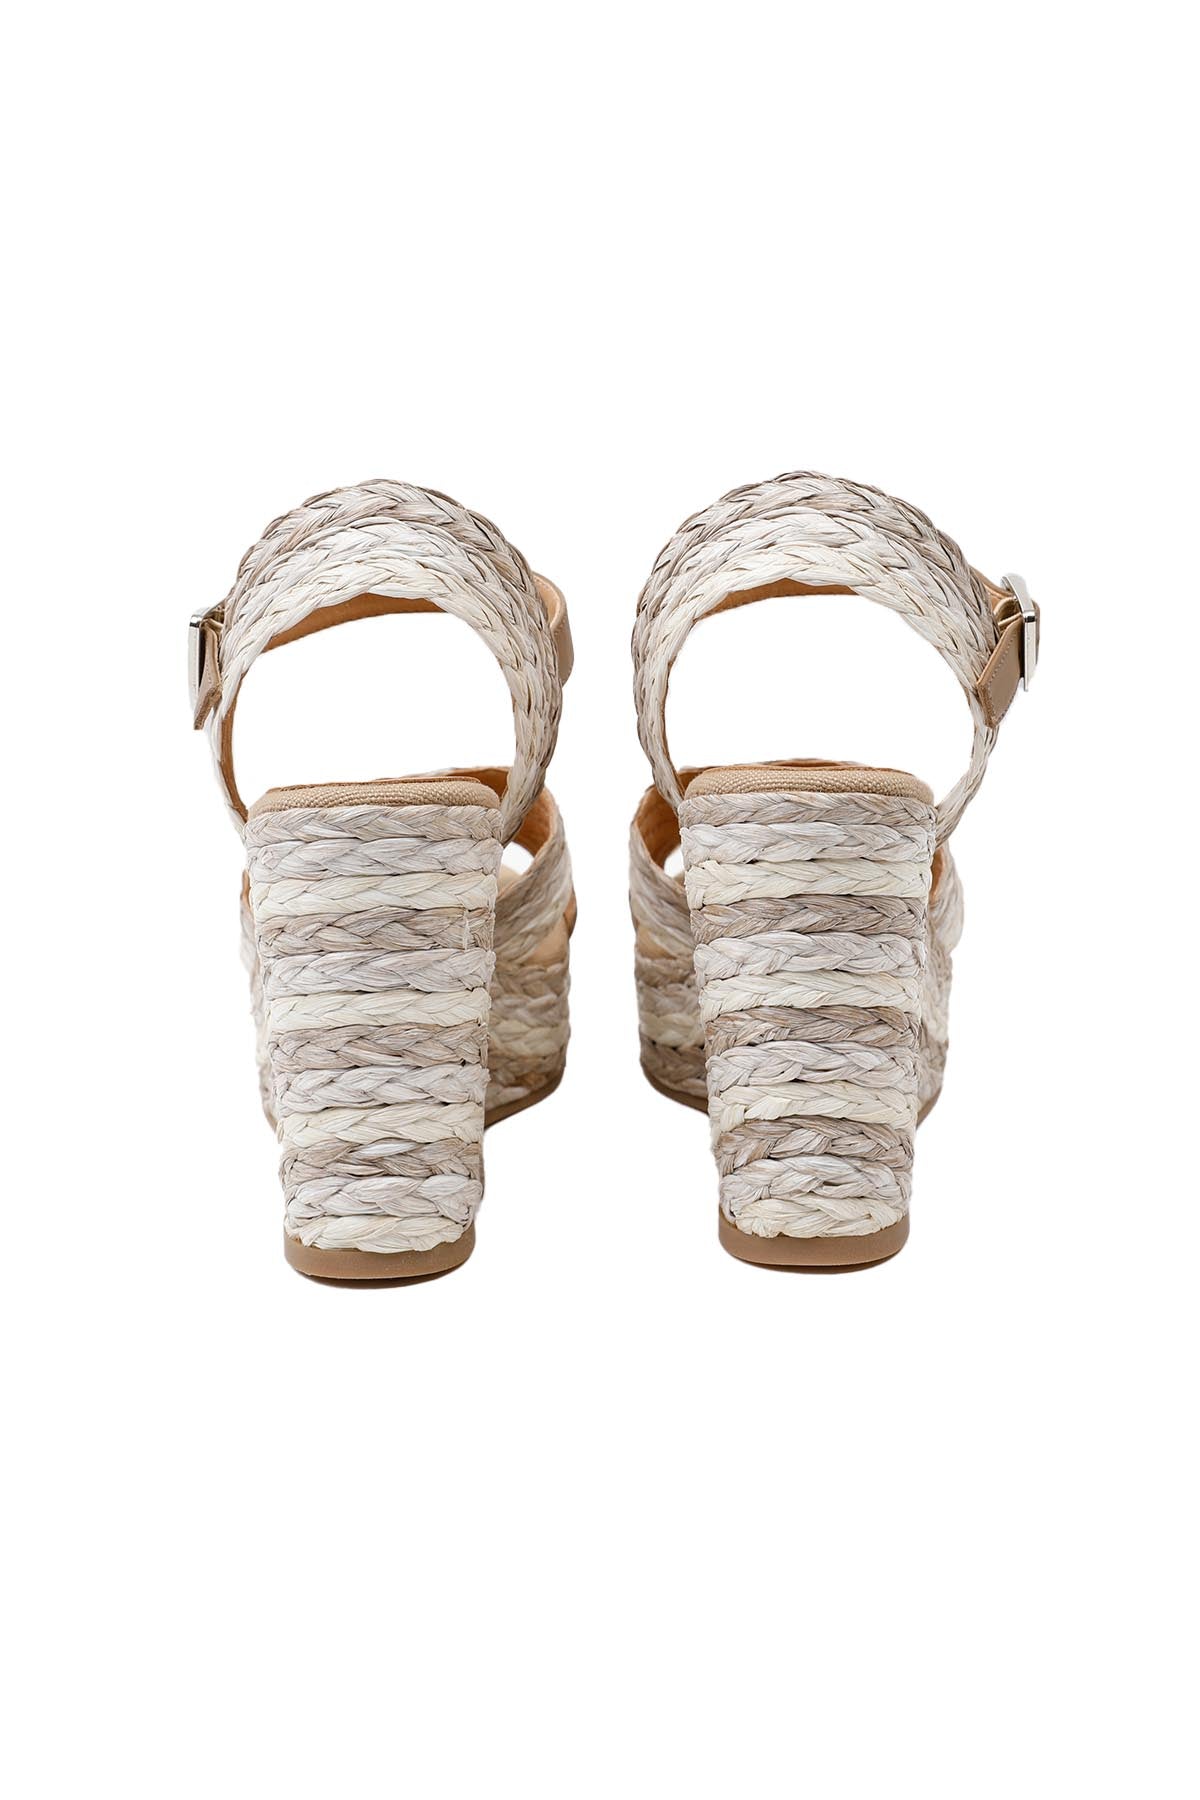 Kanna Hasır Dolgu Topuklu Hasır Örgü Sandalet-Libas Trendy Fashion Store